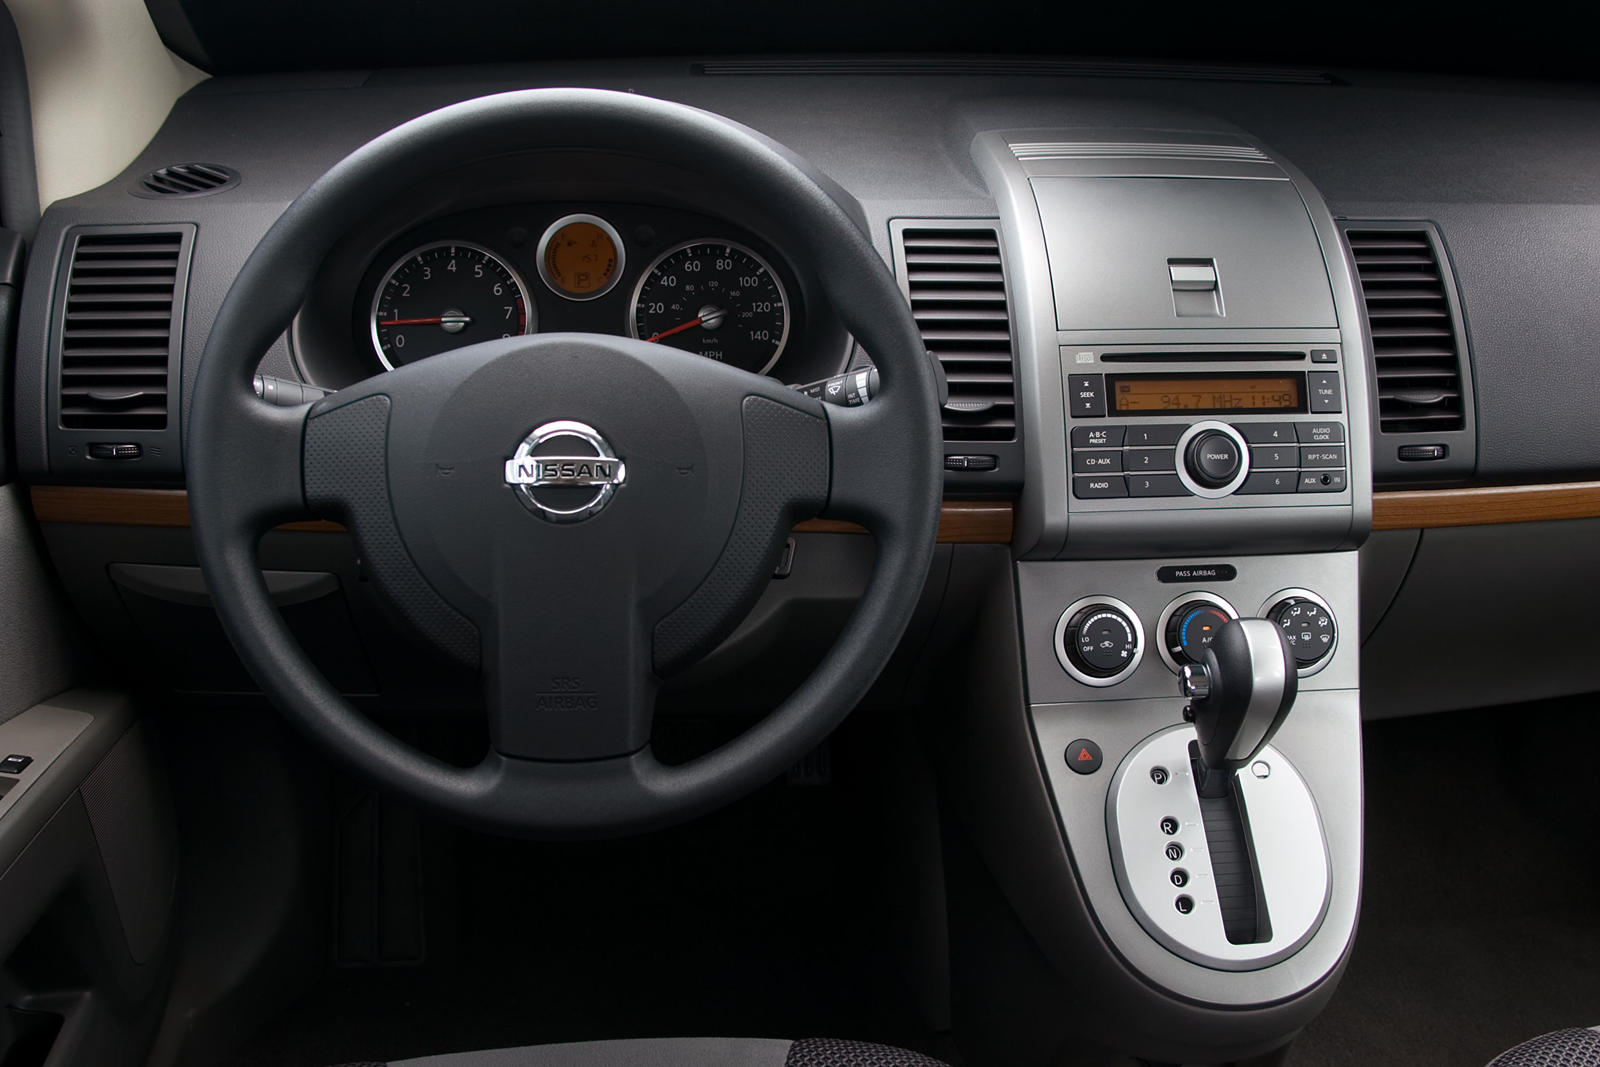 2009 Nissan Sentra Interior Photos | CarBuzz